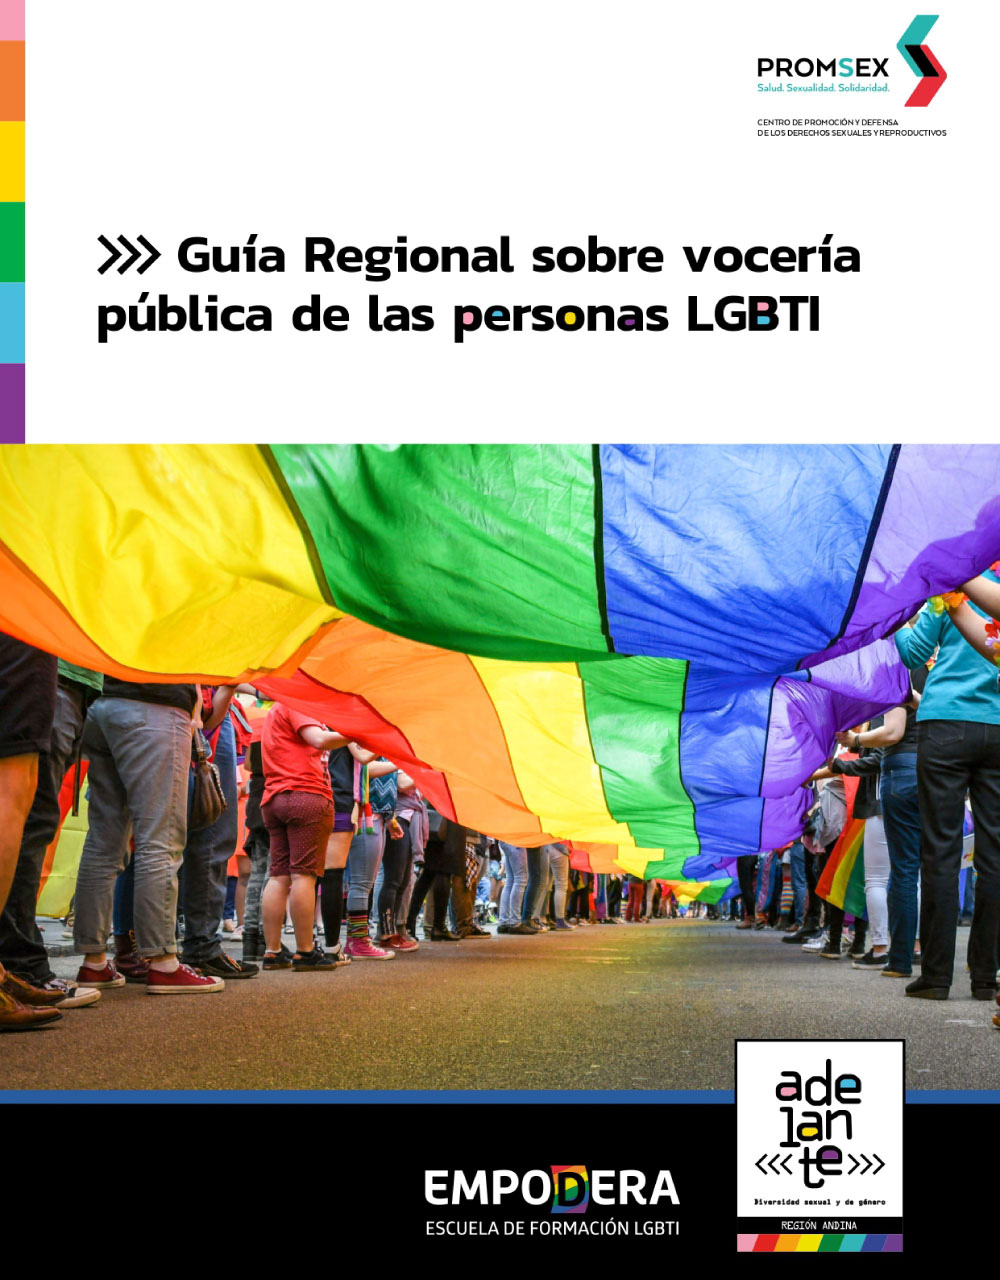 Portada de la Guía Regional sobre vocería pública de las personas LGBTI. Imagen de personas llevando una bandera grande LGBTI por la calle.